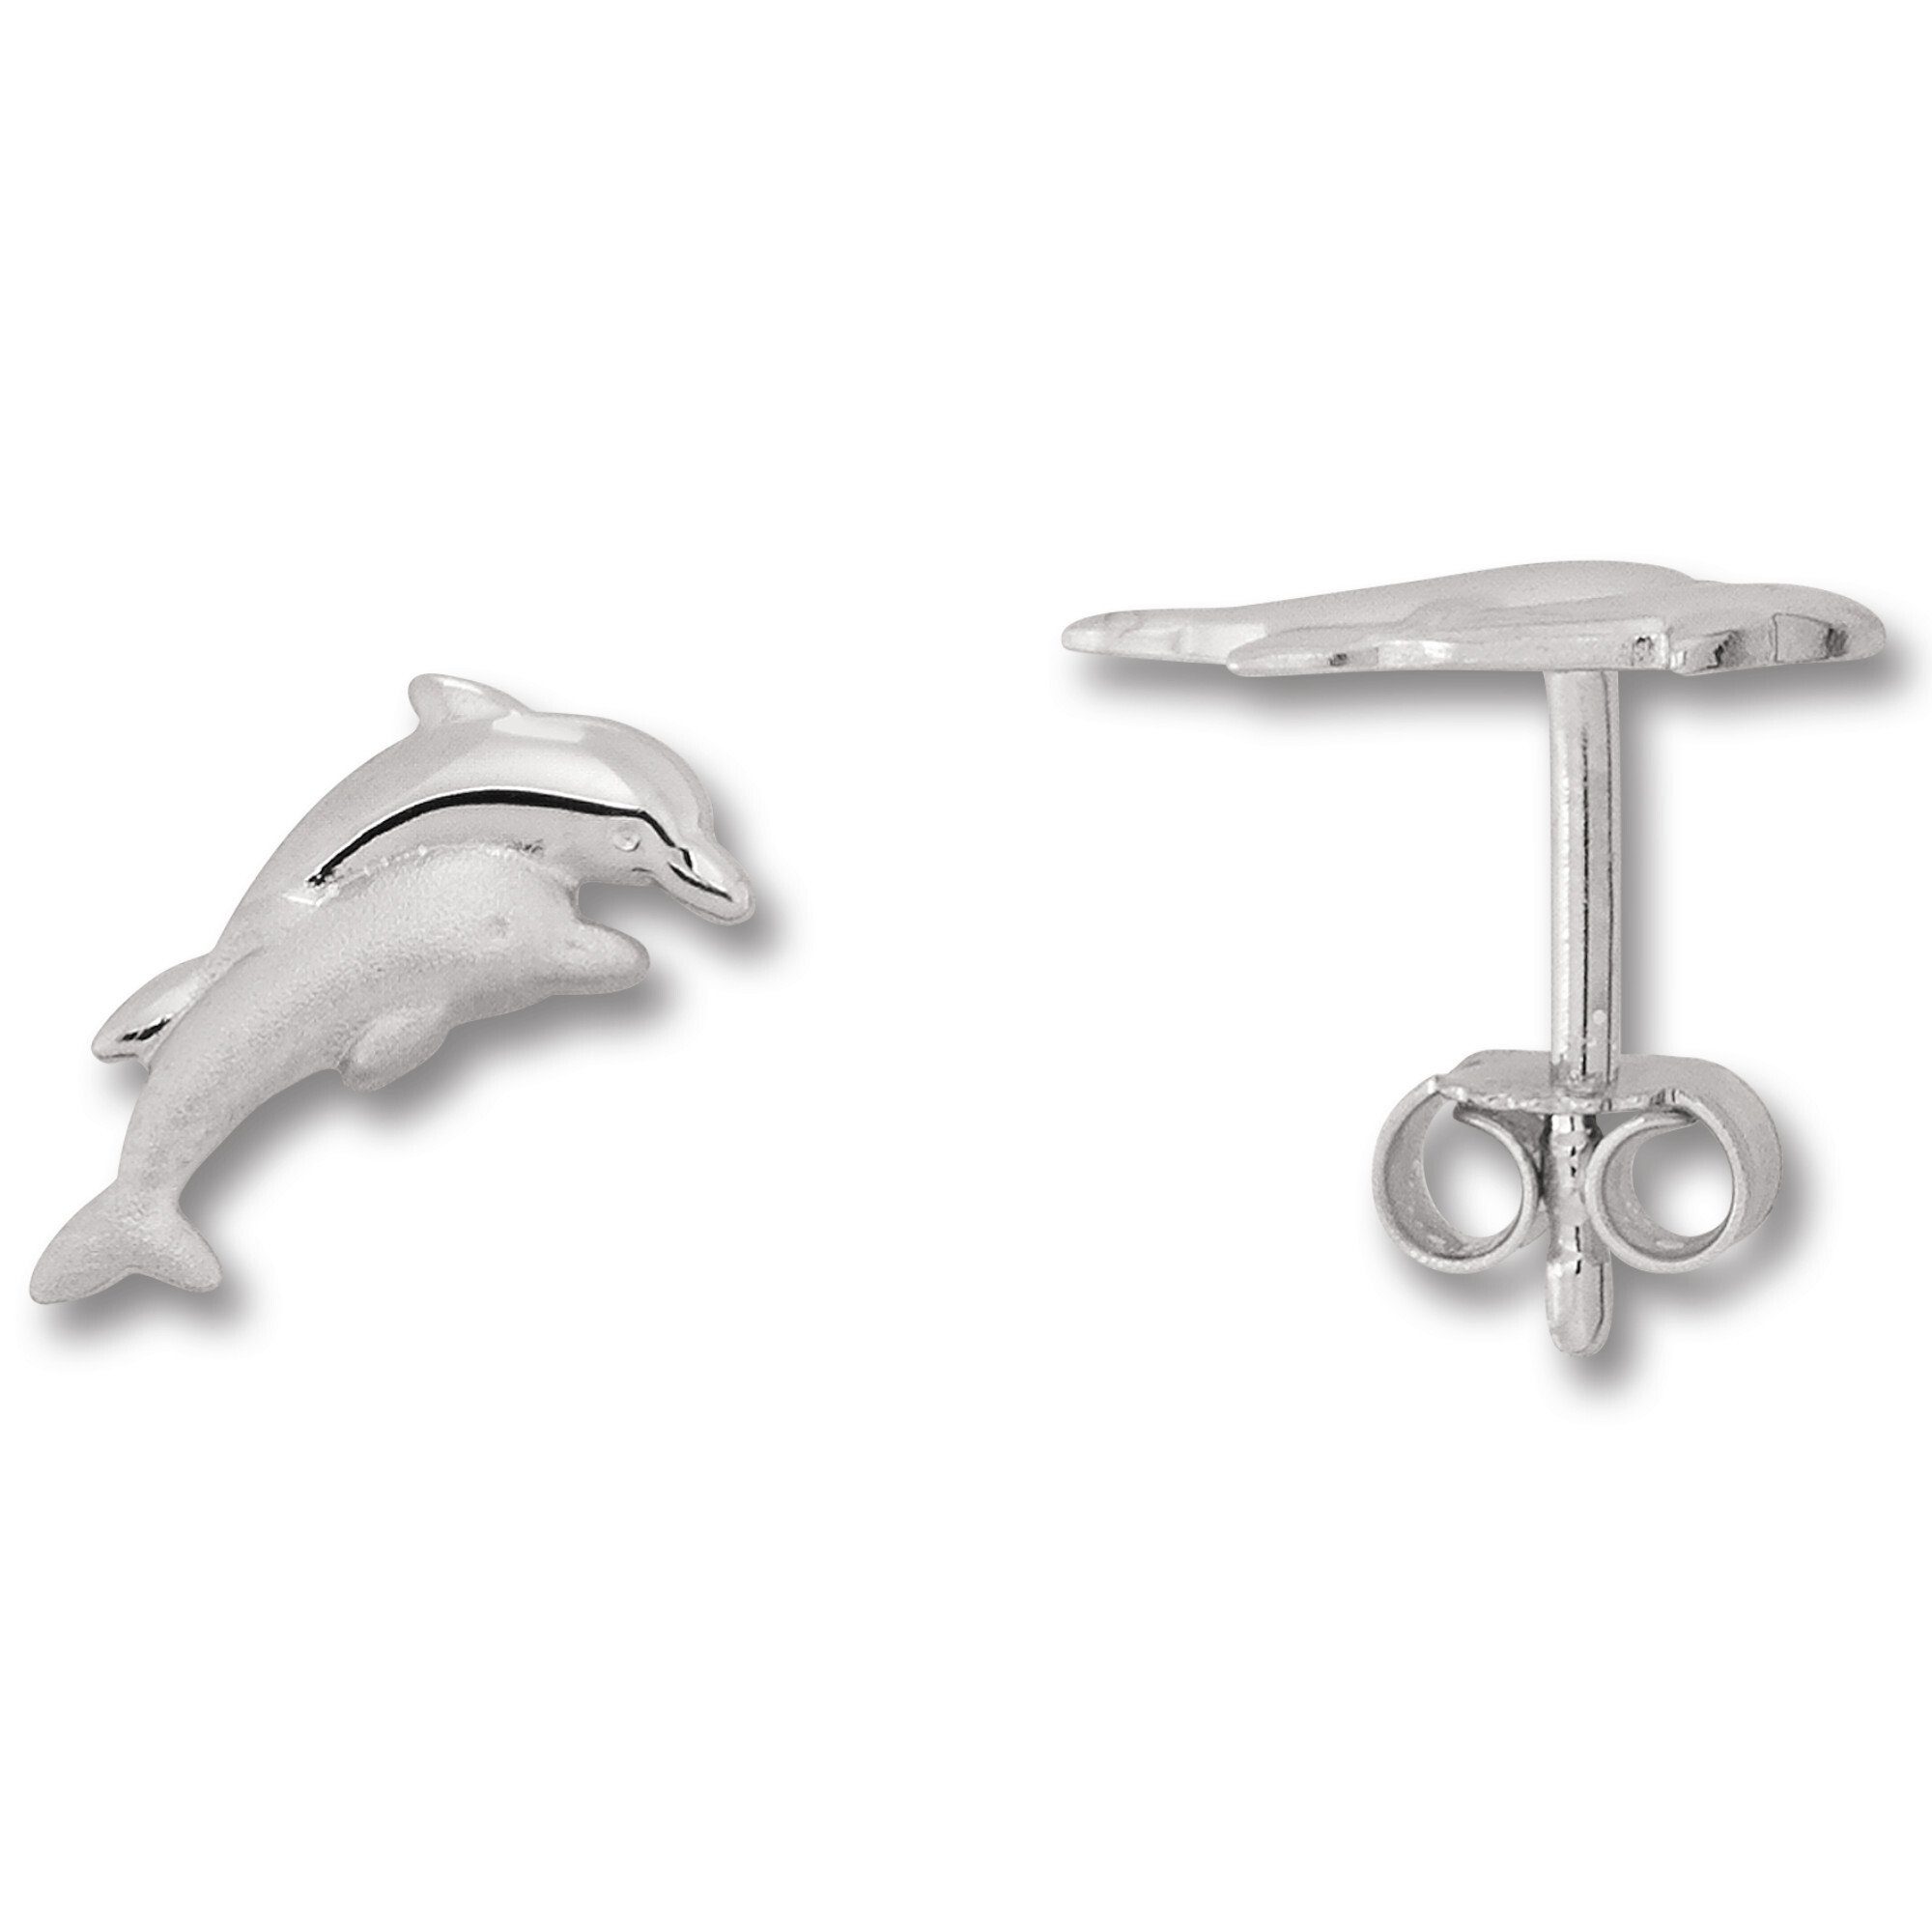 Neue Artikel zum Kauf Paar Delfin ONE 925 Ohrstecker Damen Schmuck Ohrringe Delfin aus Silber Ohrstecker ELEMENT Silber,